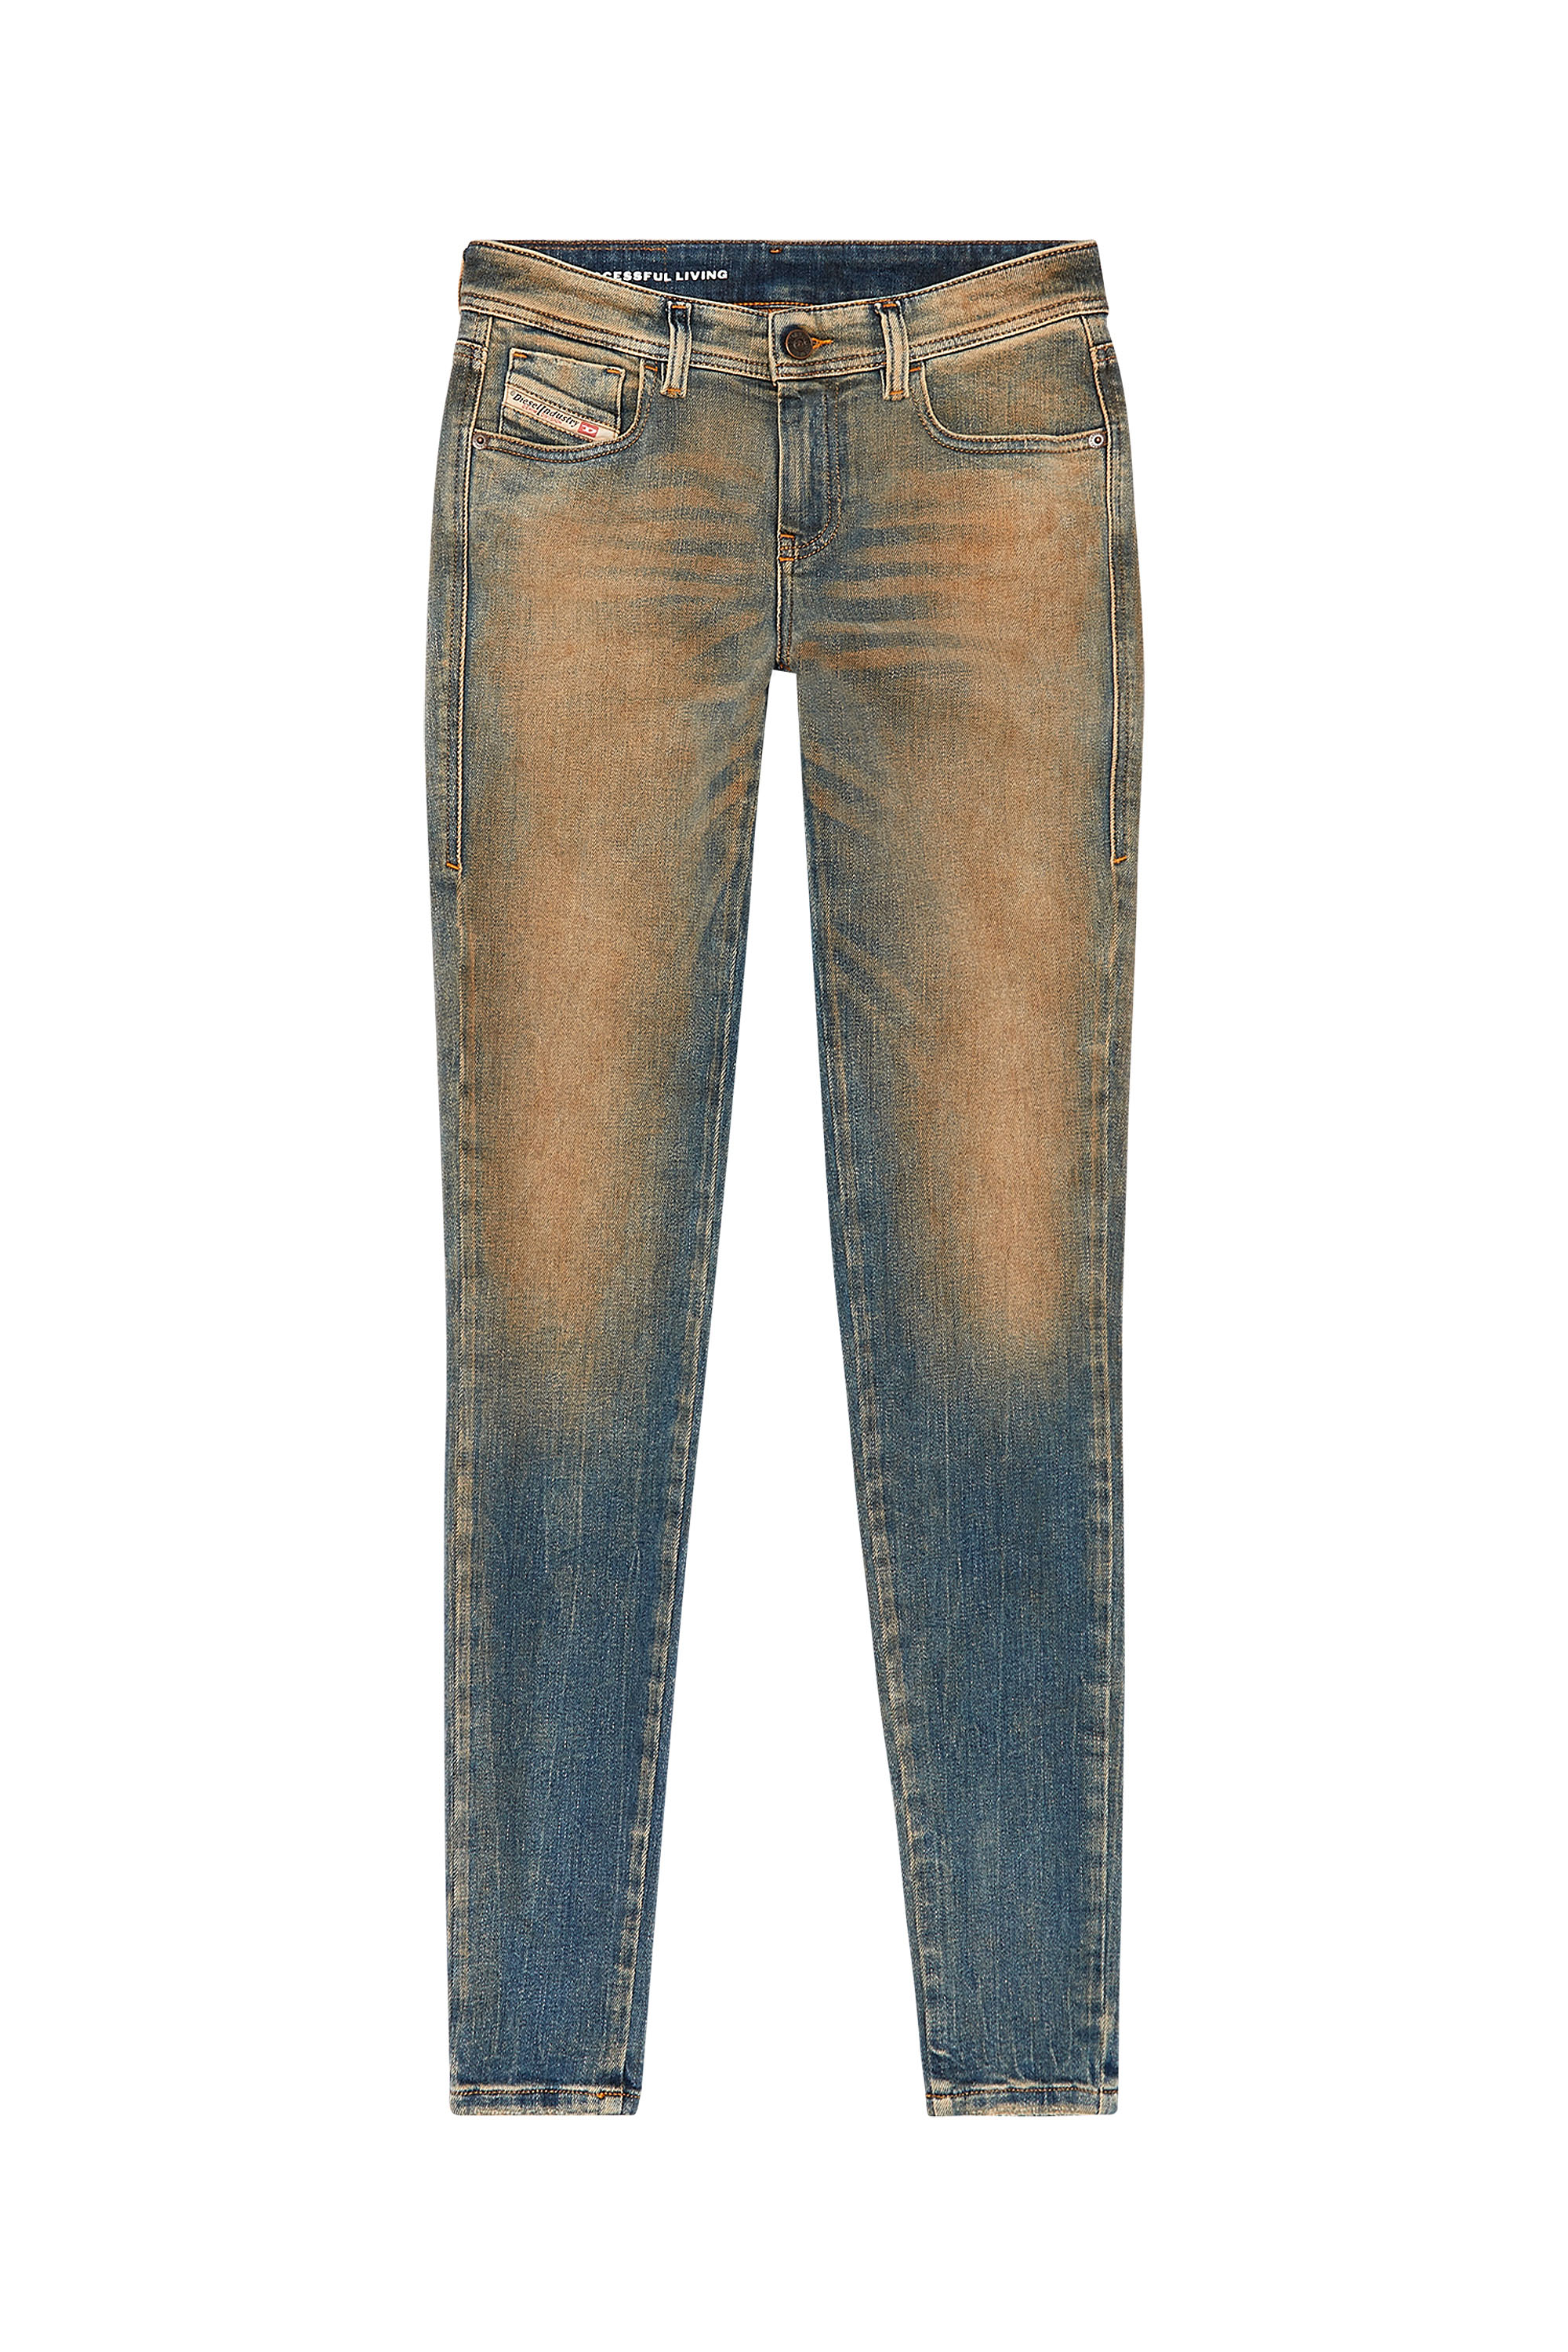 Diesel - Super skinny Jeans 2017 Slandy 09H83, Medium blue - Image 3